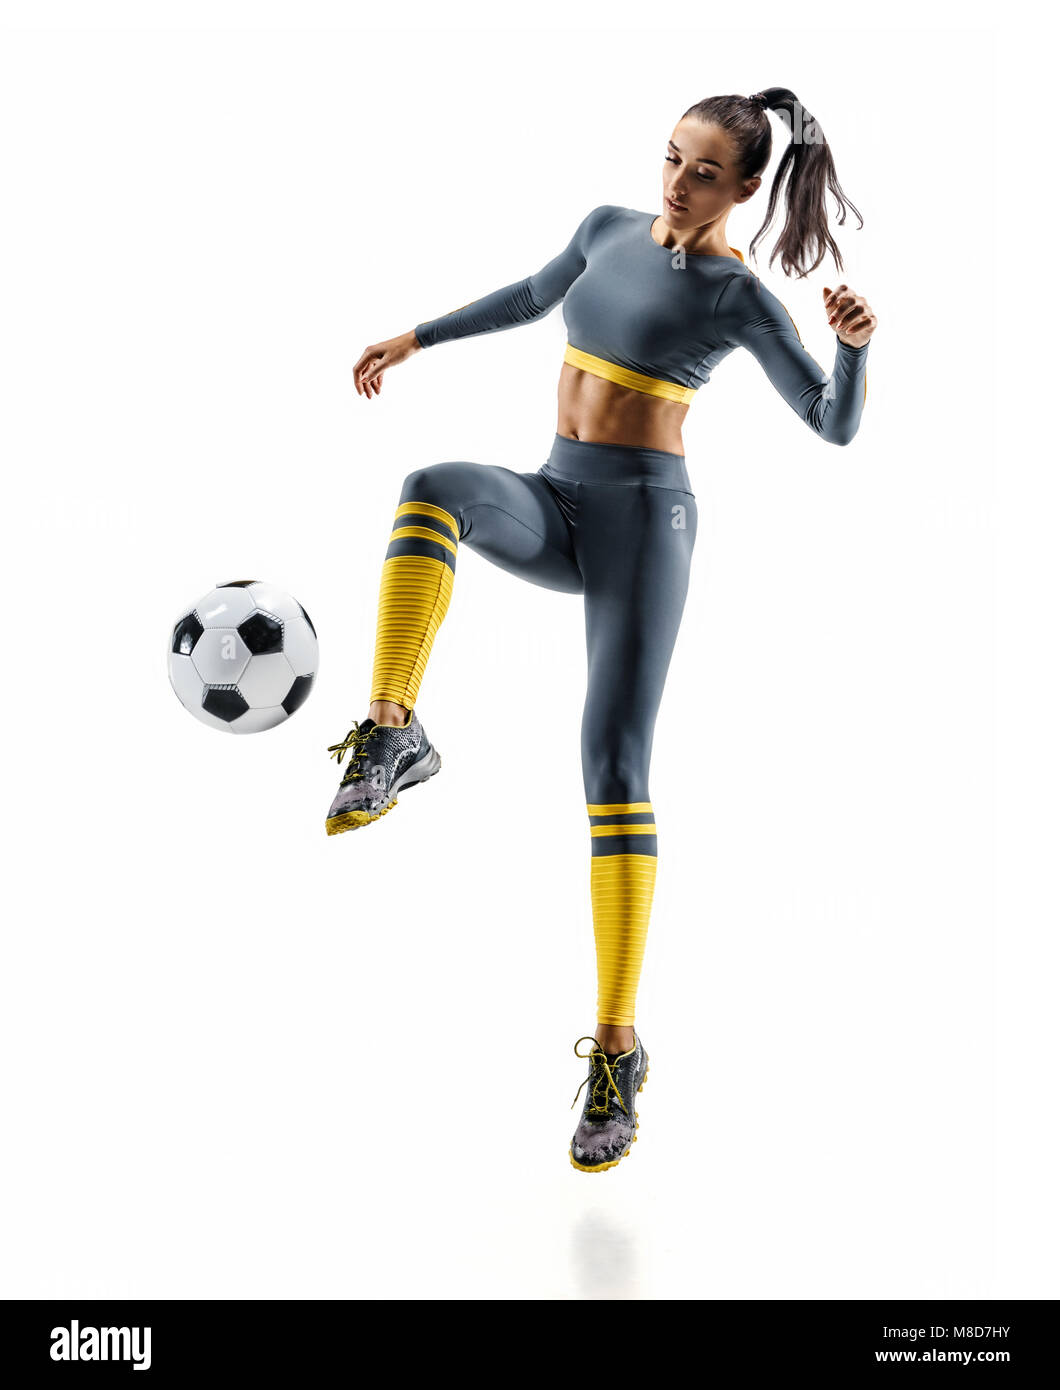 Football joueur de football en action. Photo de femme sportive dans les vêtements de sport. fond blanc isolé Le mouvement dynamique. Banque D'Images